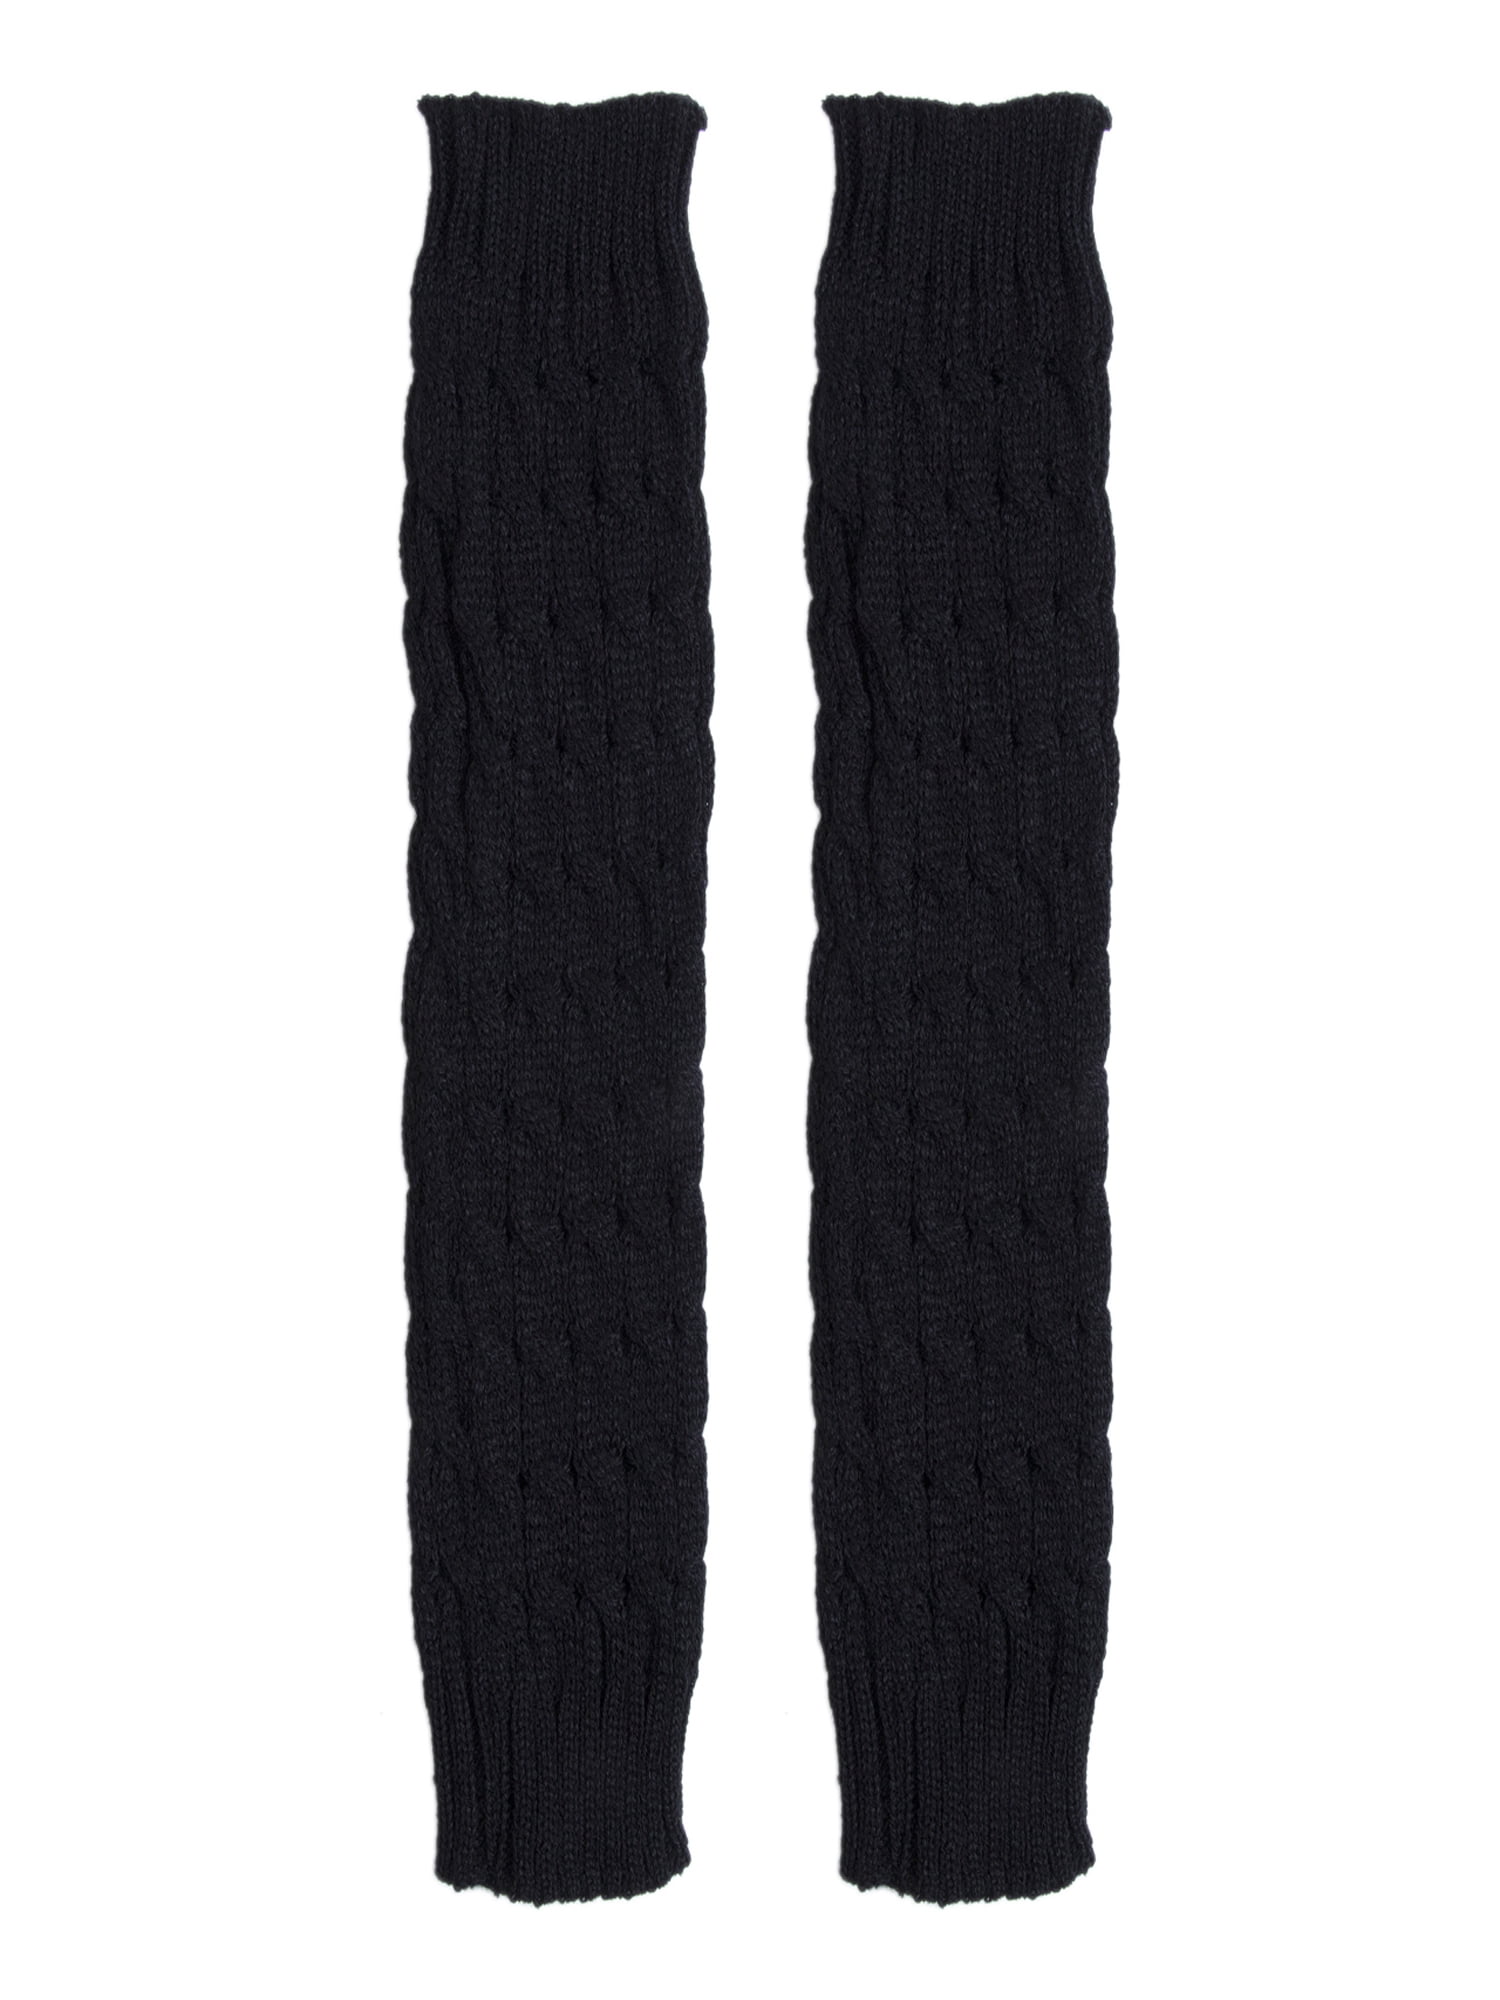 Women Winter Warm Knit High Knee Leg Warmers Crochet Leggings Boot ...